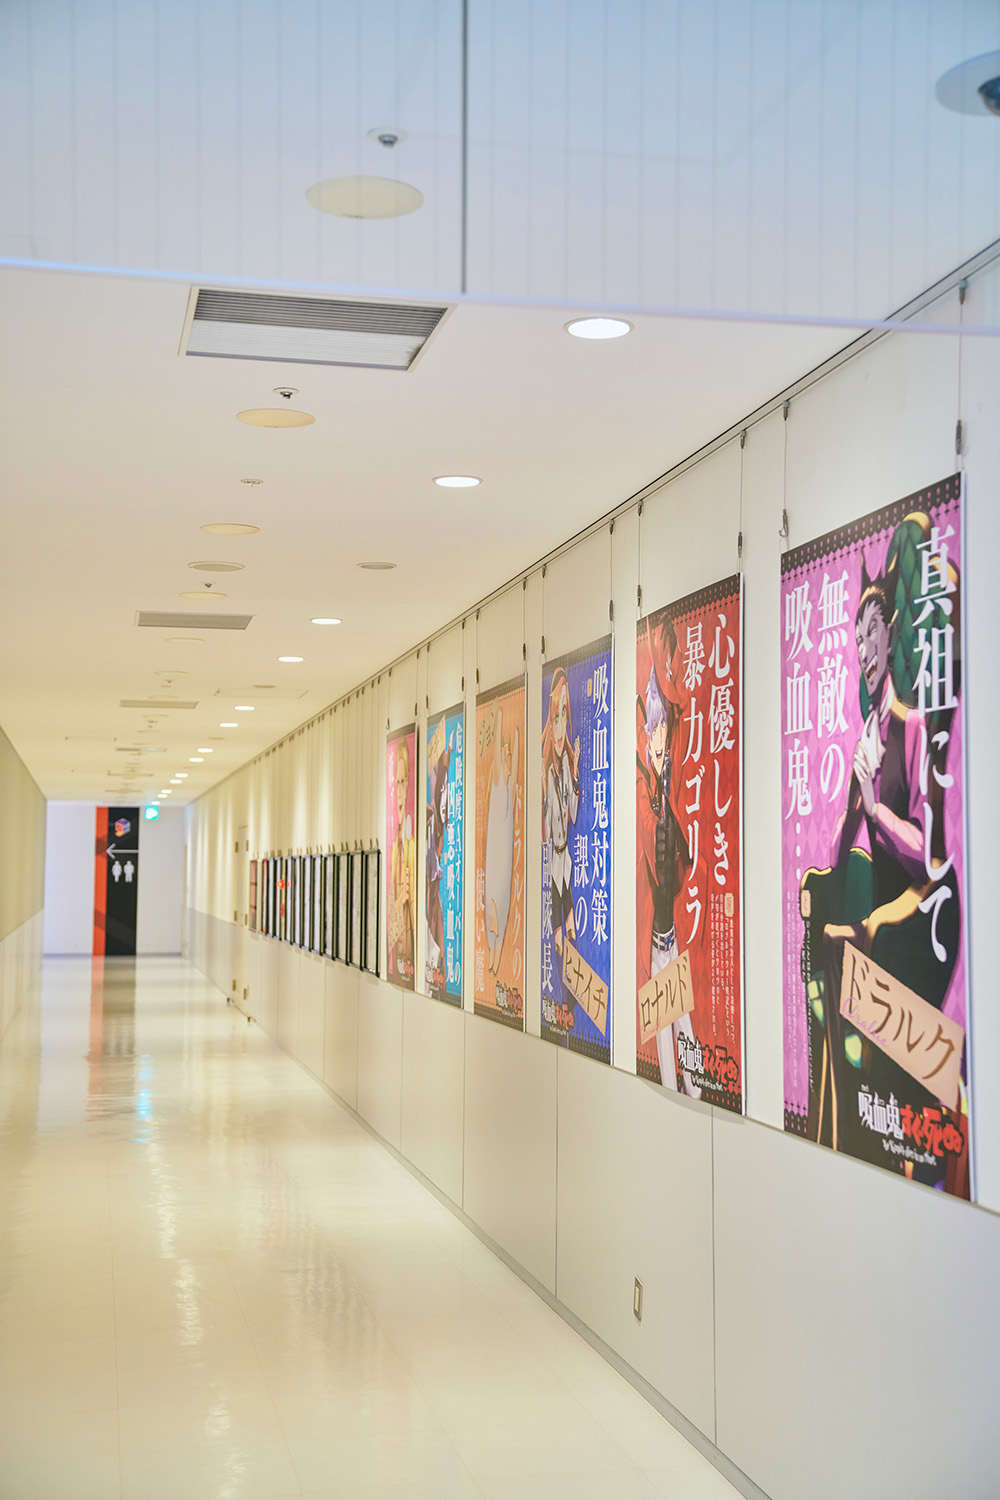 長い通路で新横浜を舞台にした人気漫画『吸血鬼すぐ死ぬ』の原画を展示（取材時）。この店舗が漫画に登場していて、聖地としても知られている。